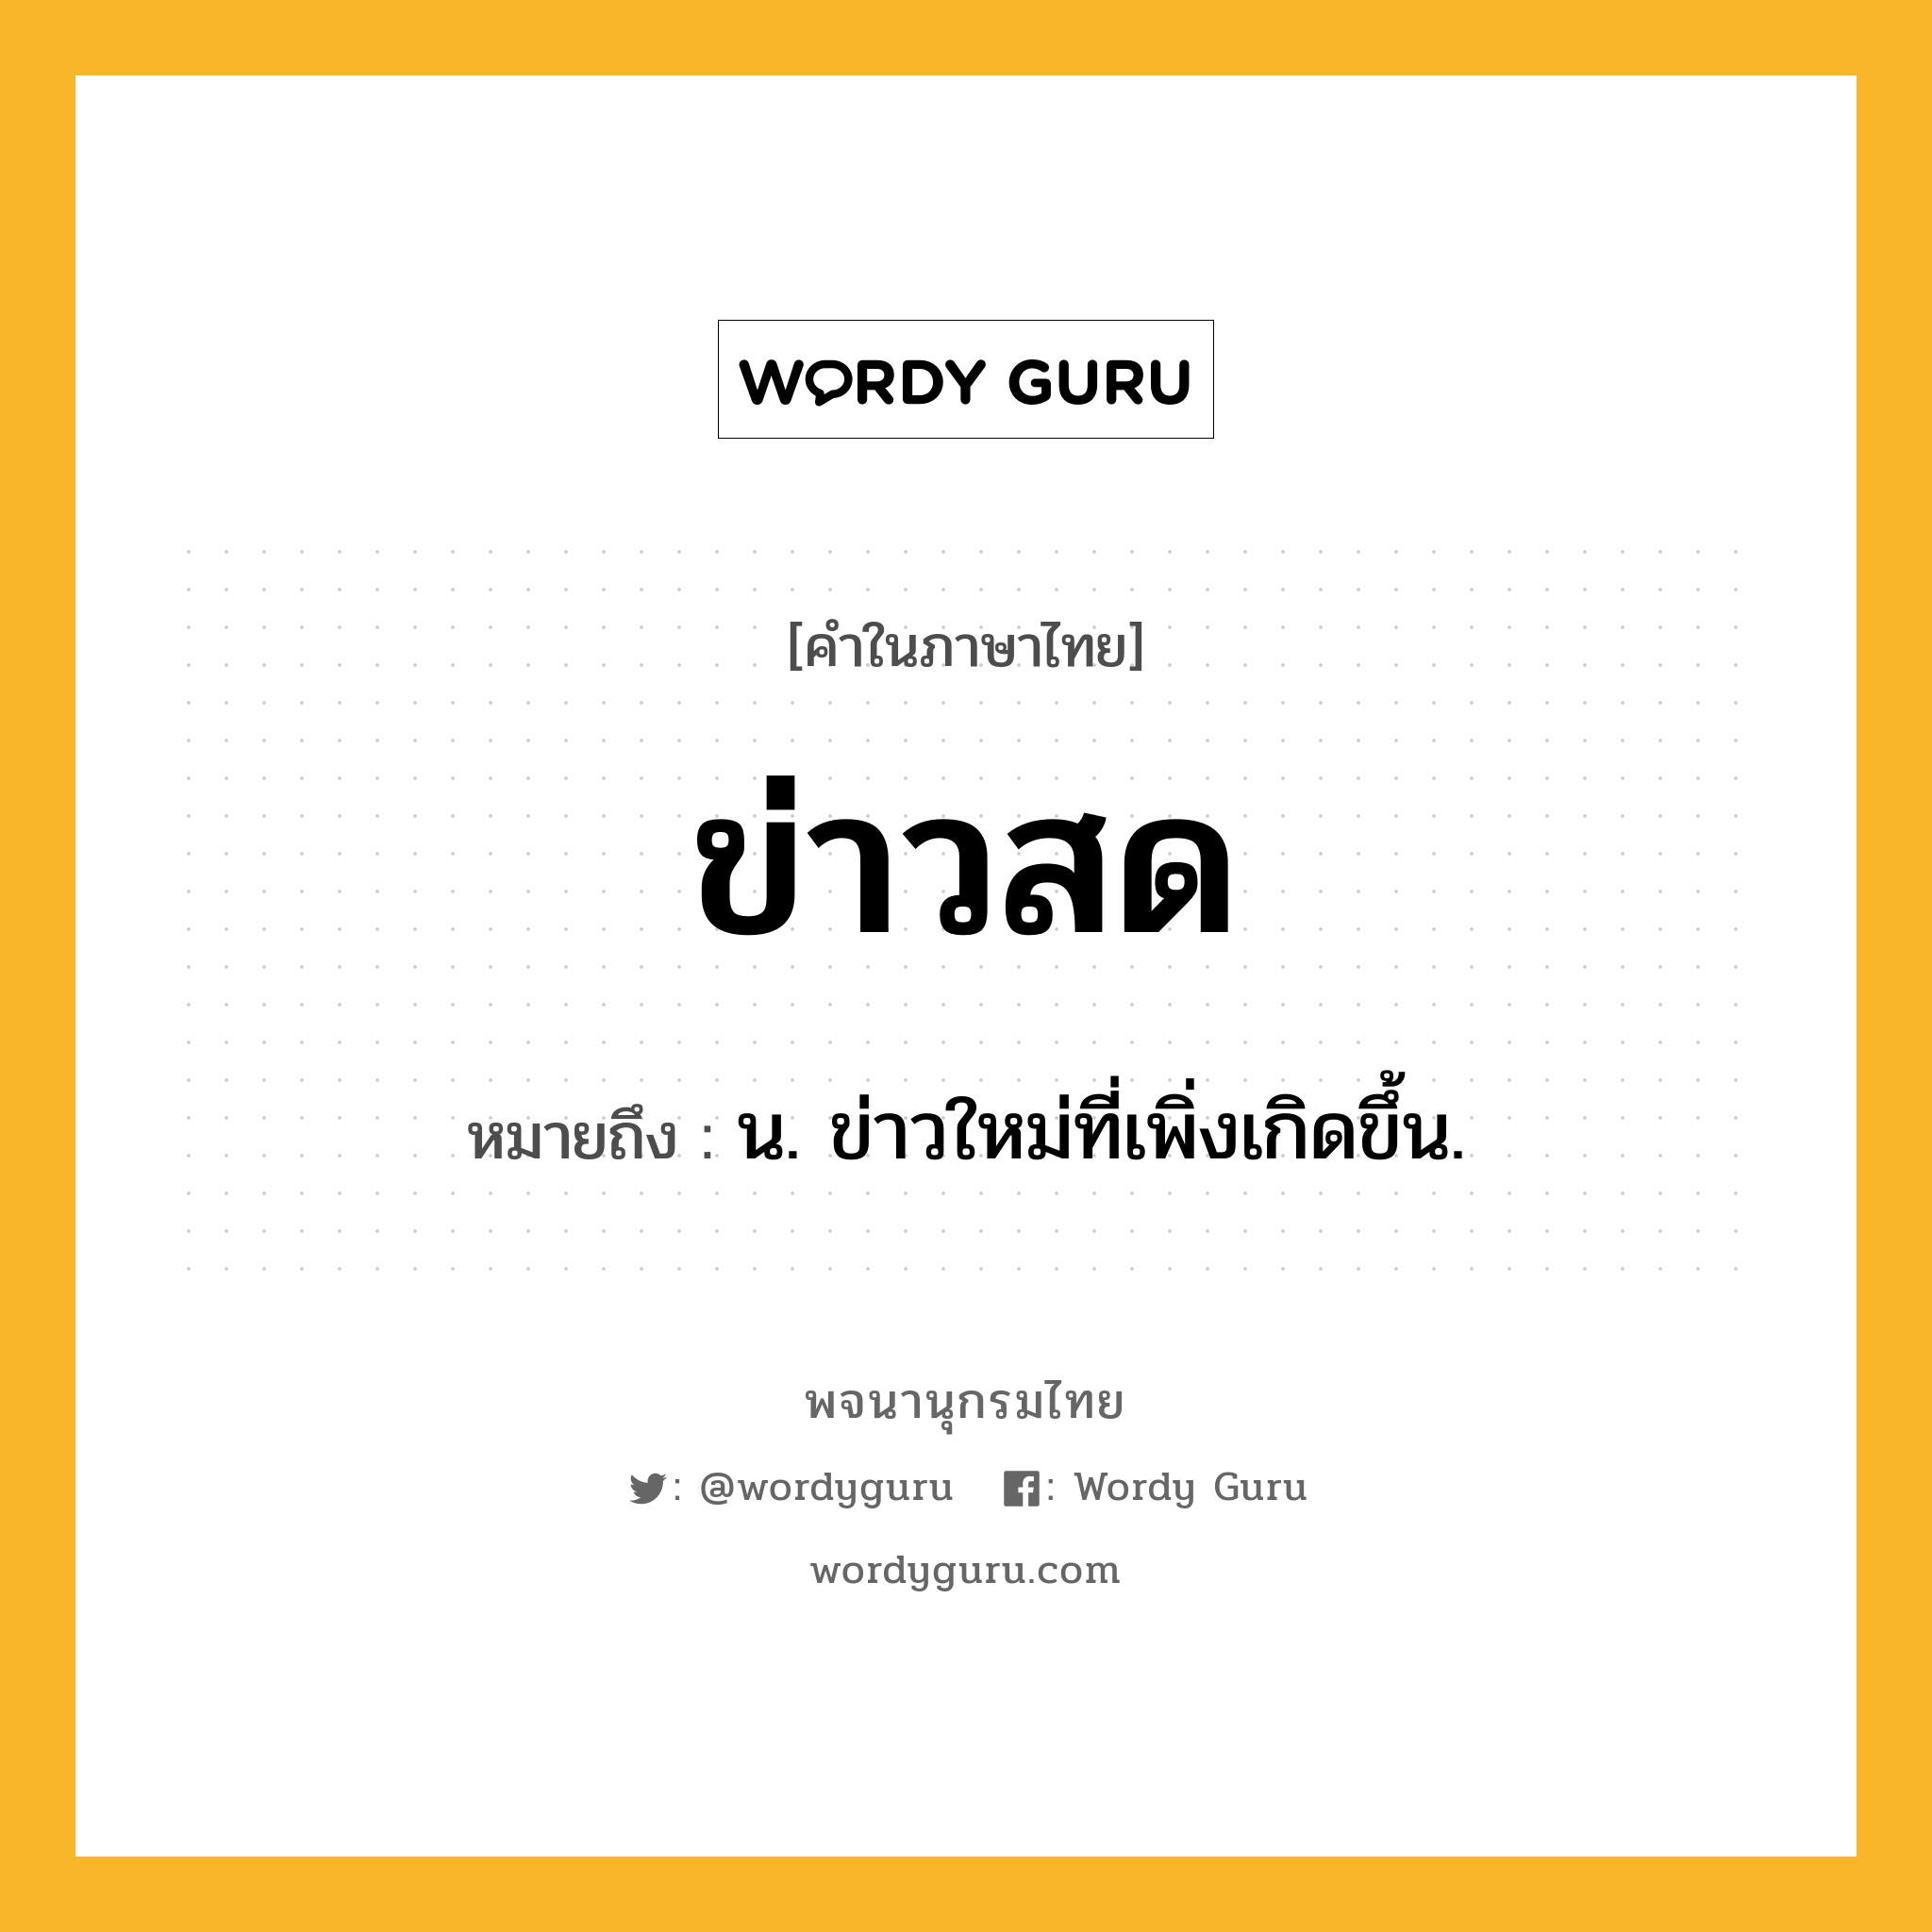 ข่าวสด ความหมาย หมายถึงอะไร?, คำในภาษาไทย ข่าวสด หมายถึง น. ข่าวใหม่ที่เพิ่งเกิดขึ้น.